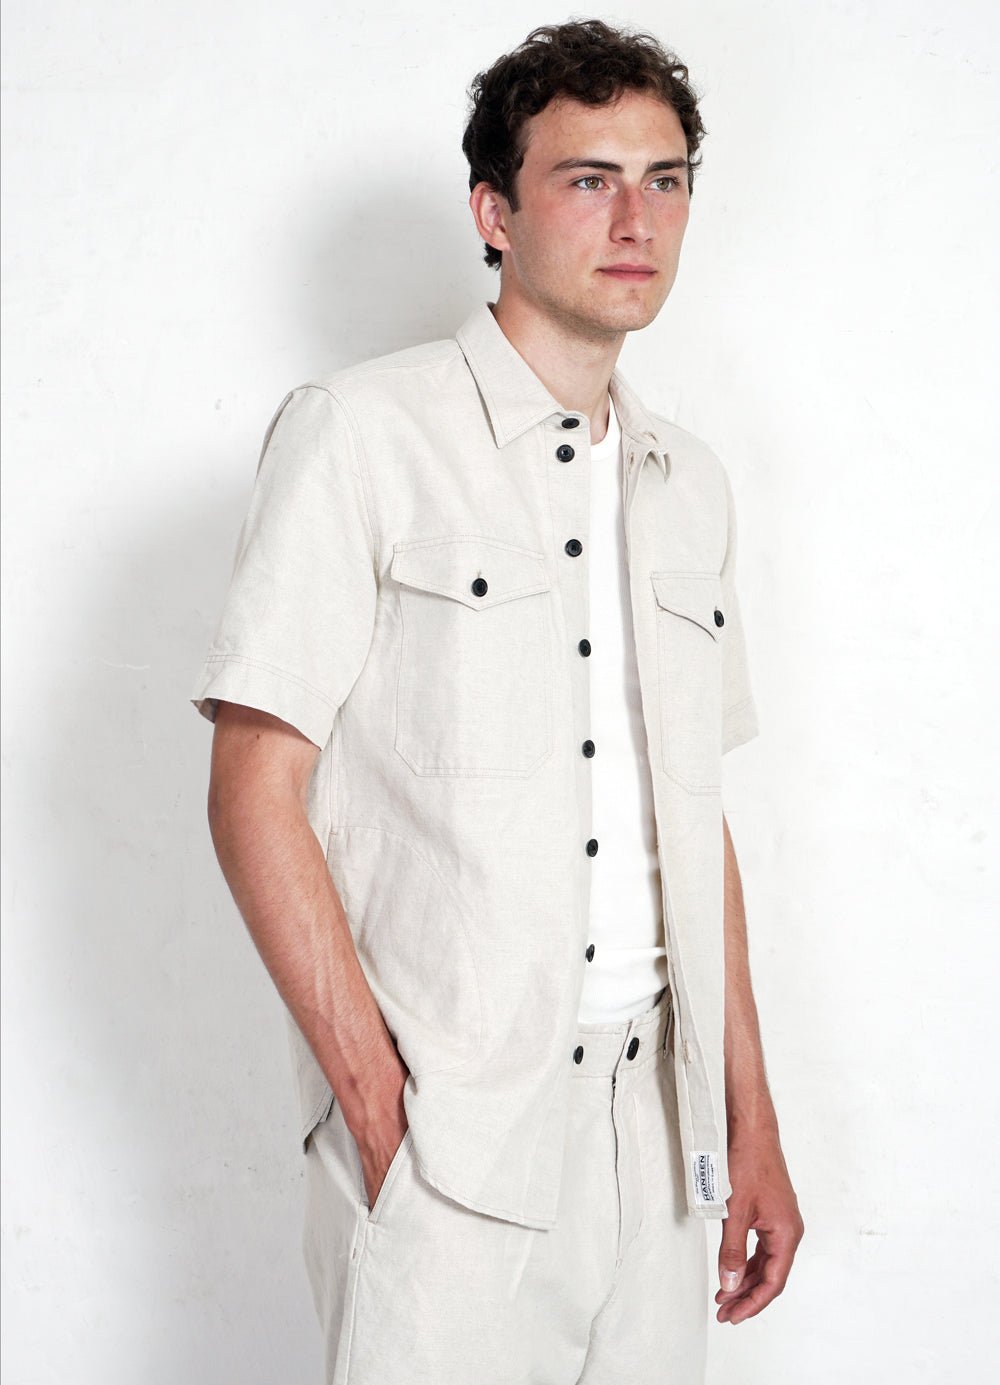 HANSEN GARMENTS - VILLY | Short Sleeve Shirt | Flax Nature - HANSEN Garments